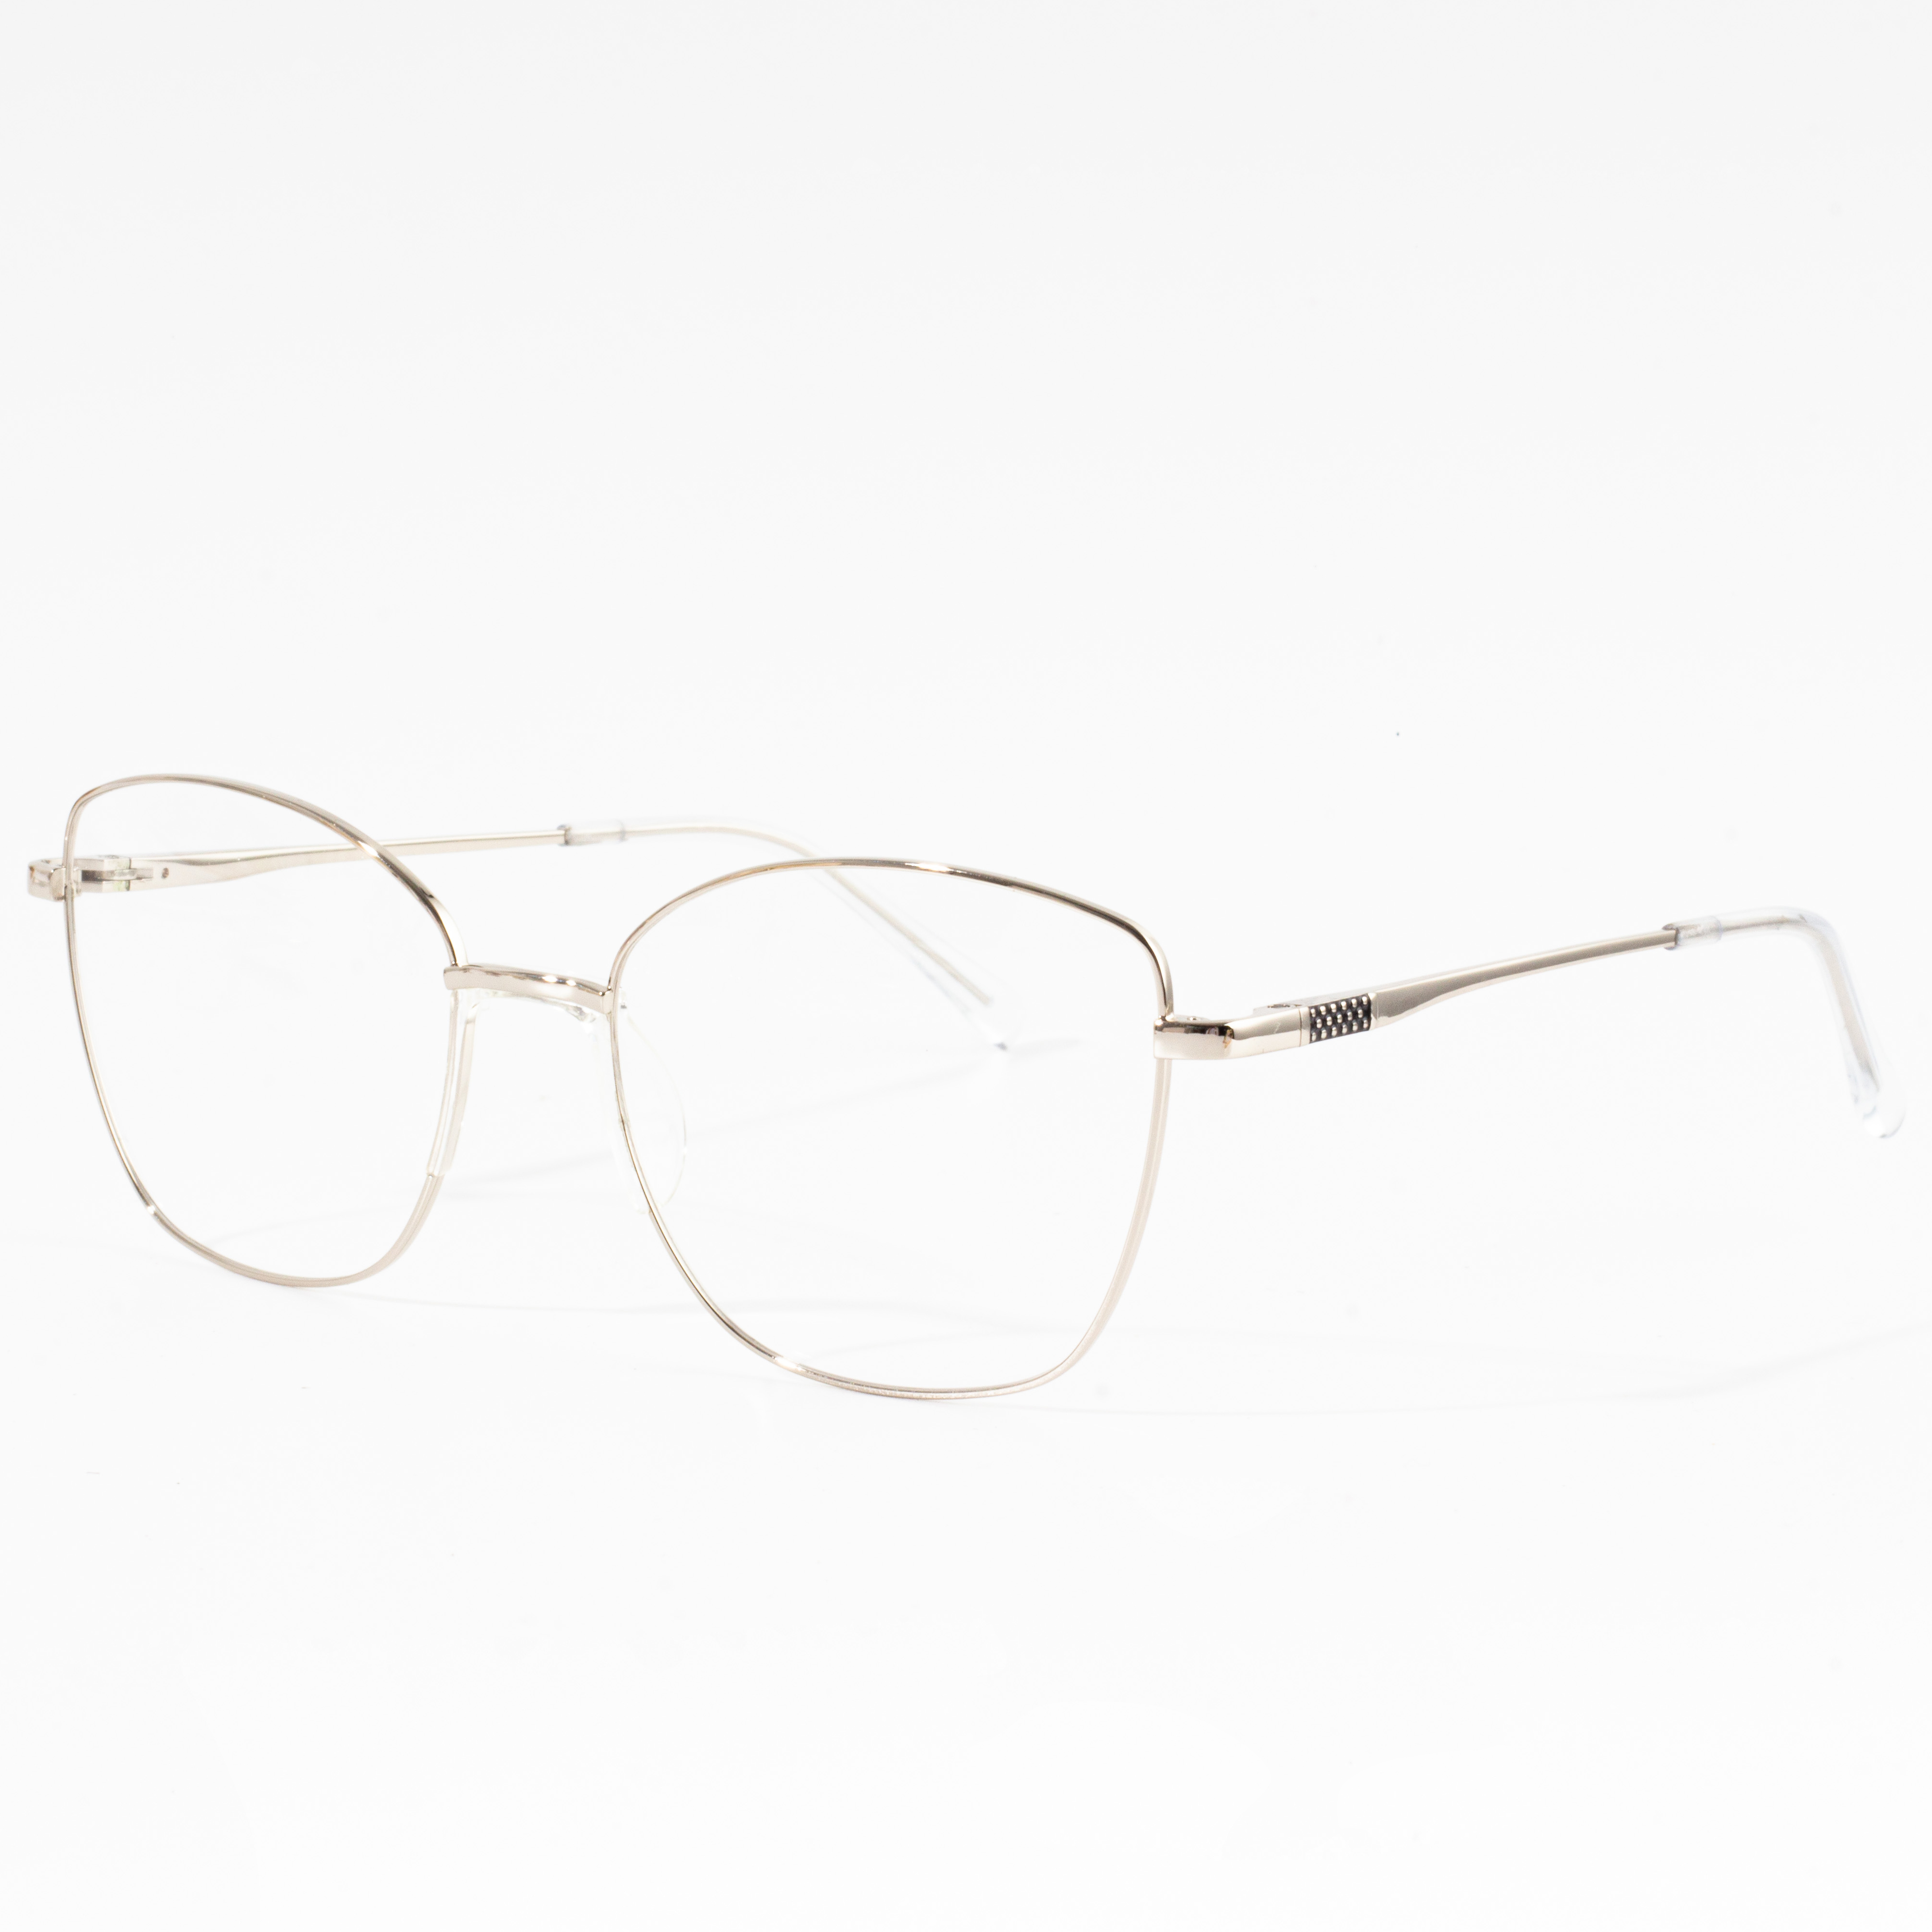 I-eyeglass frame